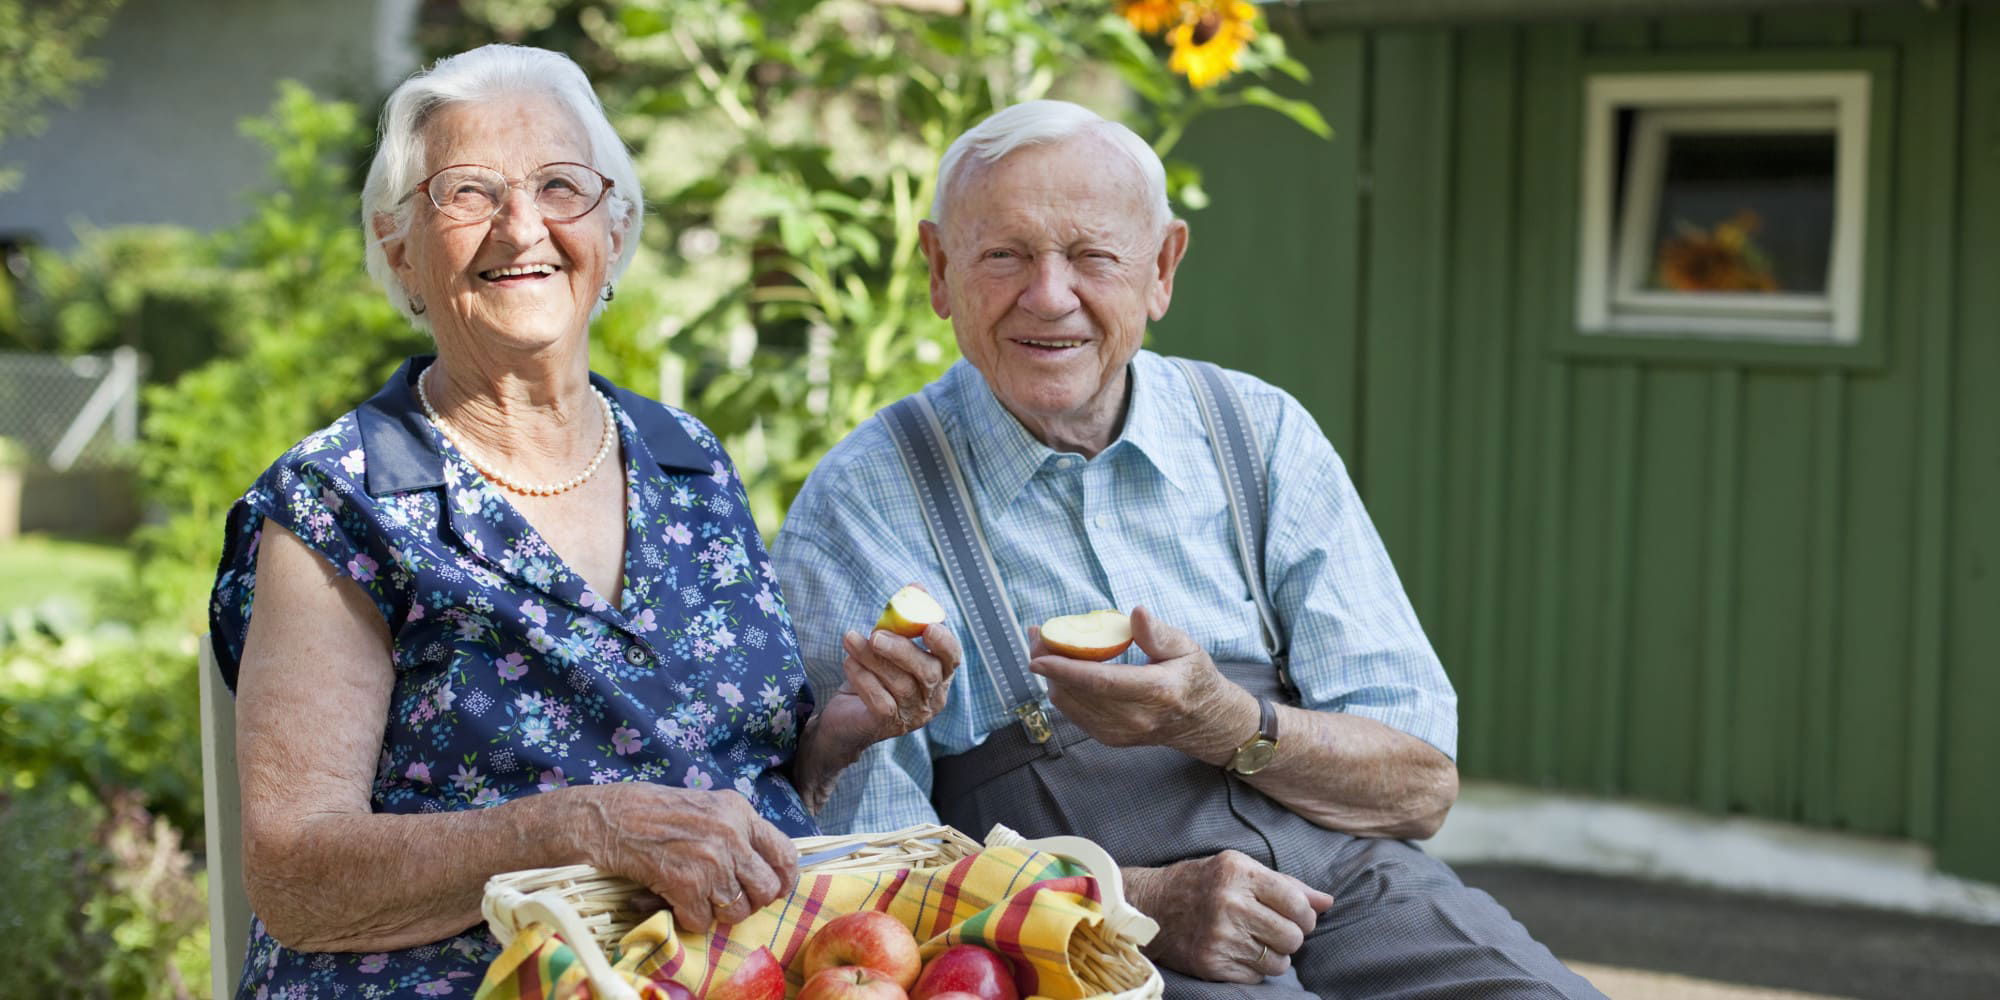 كيف تأكل بشكل صحيح في سن الشيخوخة